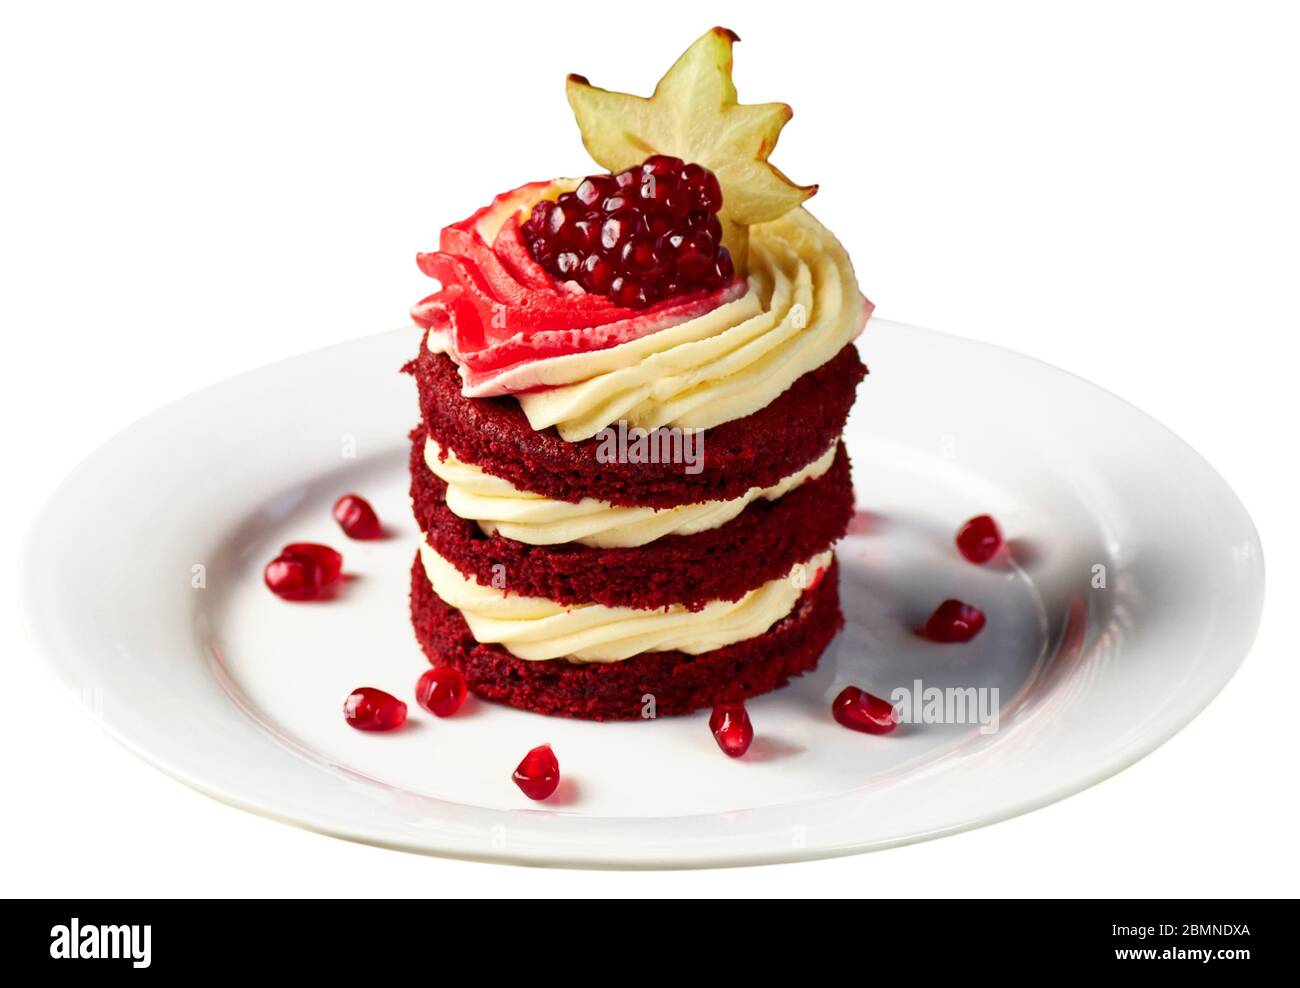 Köstliche Kuchen Red Velvet mit Schlagsahne, Granatapfel und Karambola auf weißem Teller dekoriert, serviert mit einem Glas Früchtetee. Isoliert über Weiß Stockfoto